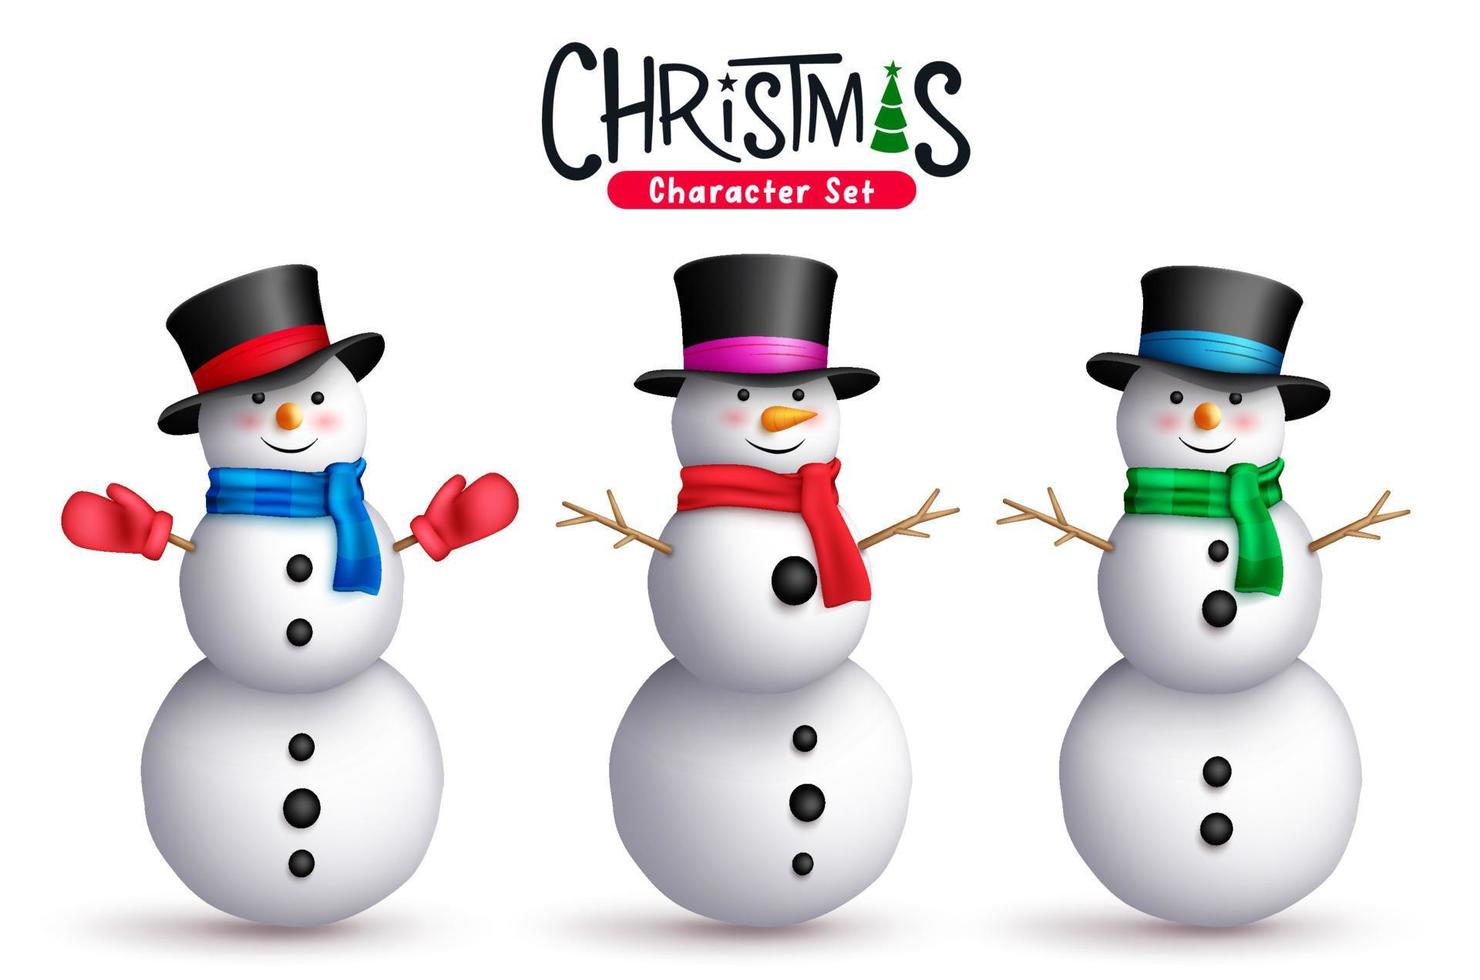 boneco de neve conjunto de vetores de personagens de Natal. snow man Christmas personagens 3d em pé com elementos lenço, chapéu e galho para a coleção de design gráfico de Natal e inverno. ilustração vetorial